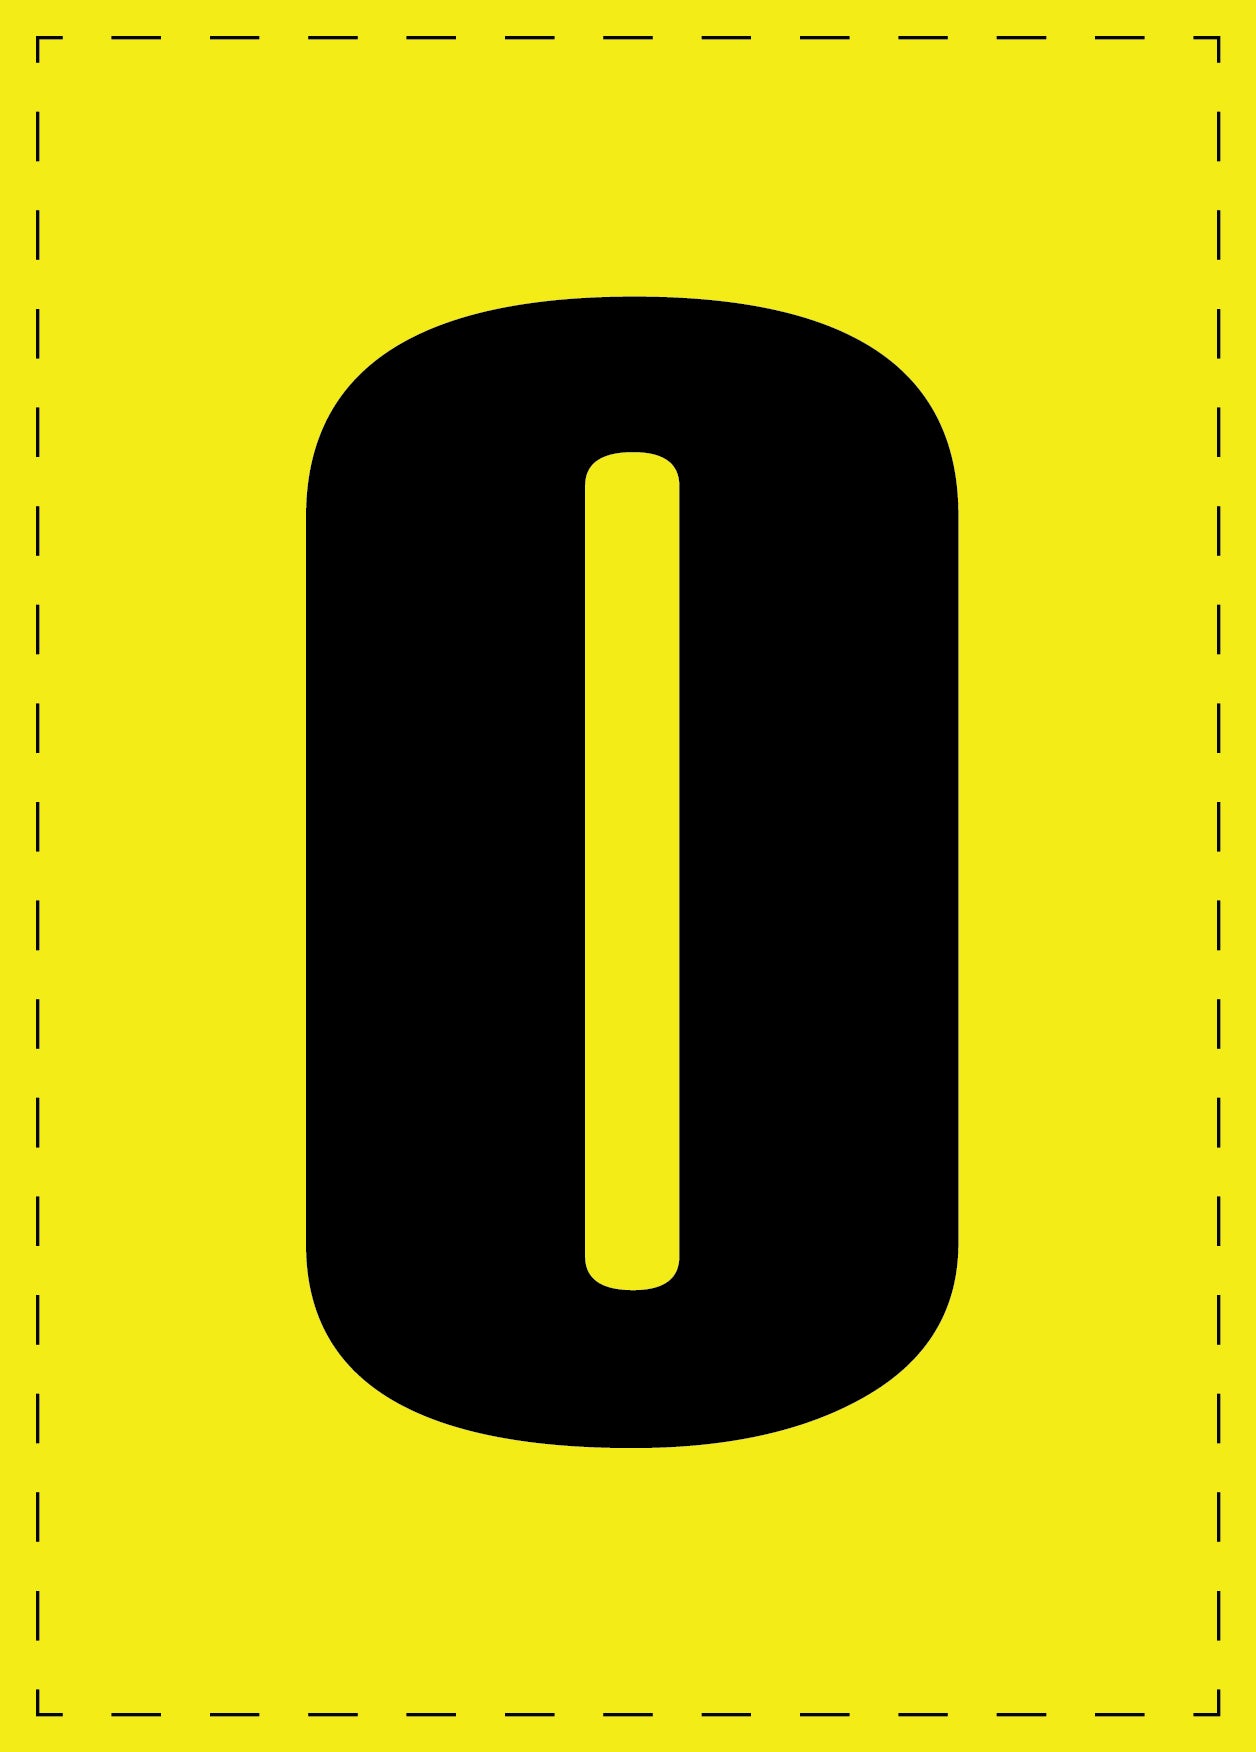 Buchstabe O Klebebuchstaben und Zahlenaufkleber schwarze Schrift gelber Hintergrund  ES-BGPVC-O-3